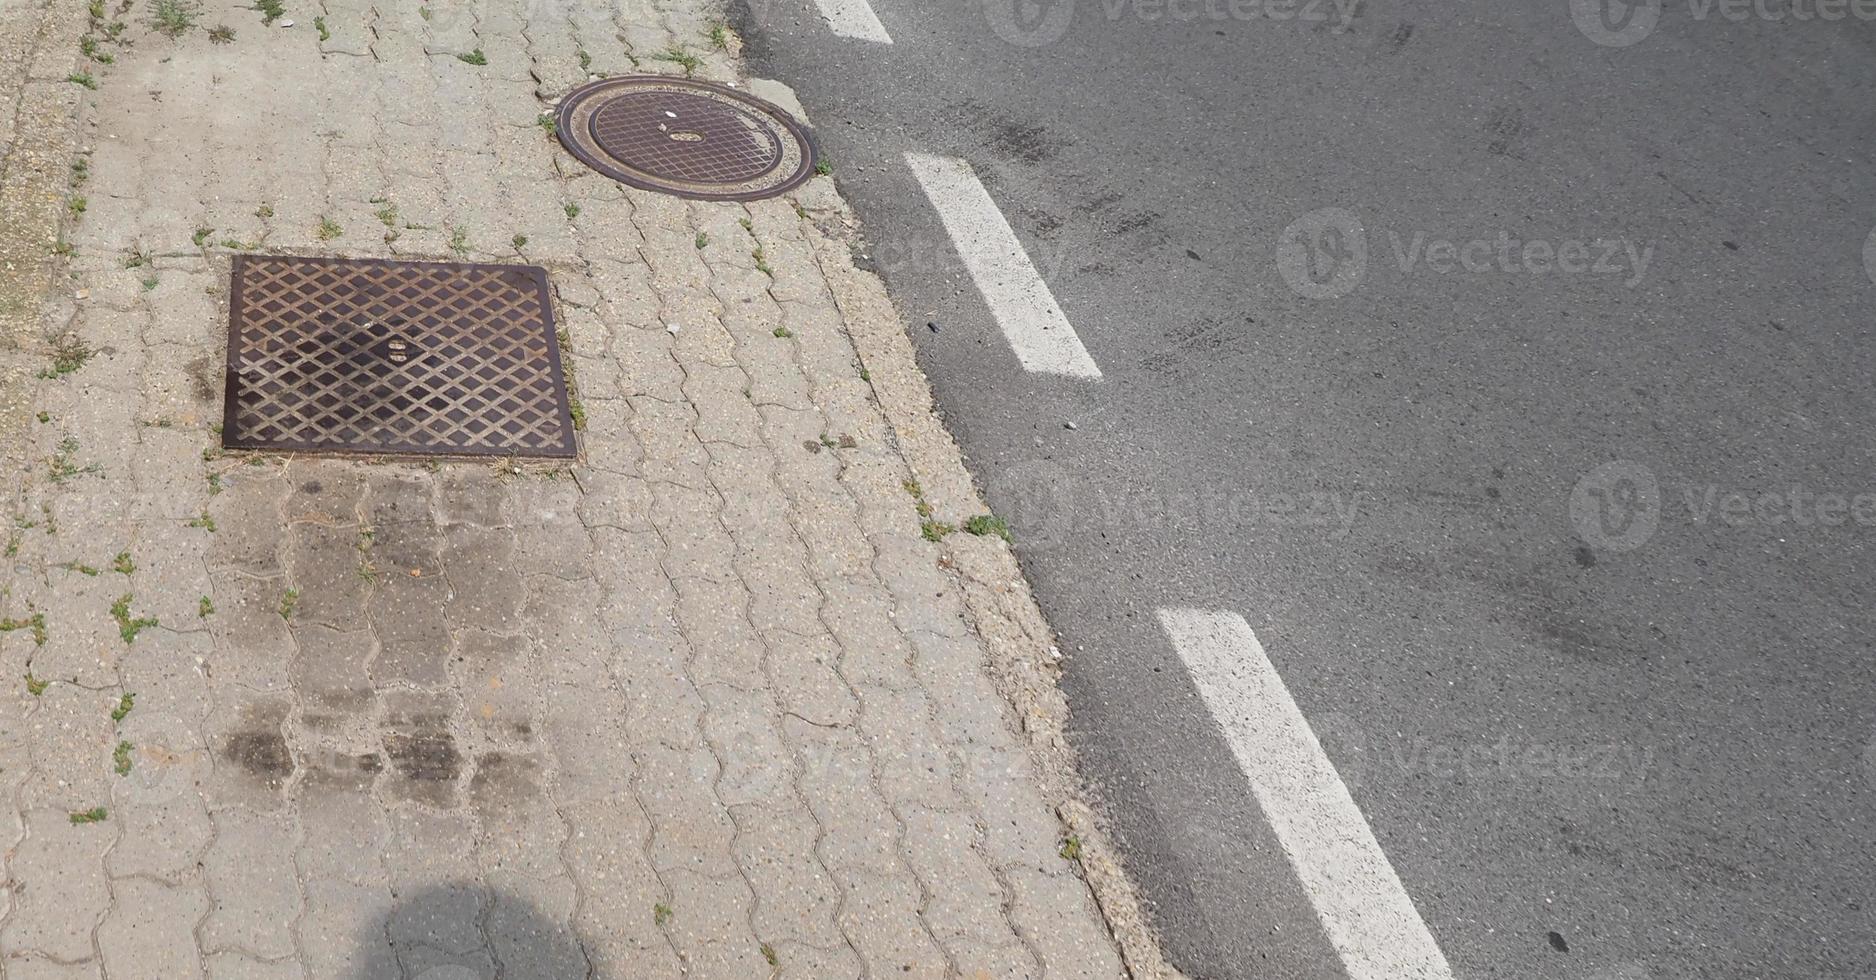 piastrelle di cemento per pavimentazione e sfondo di asfalto stradale foto